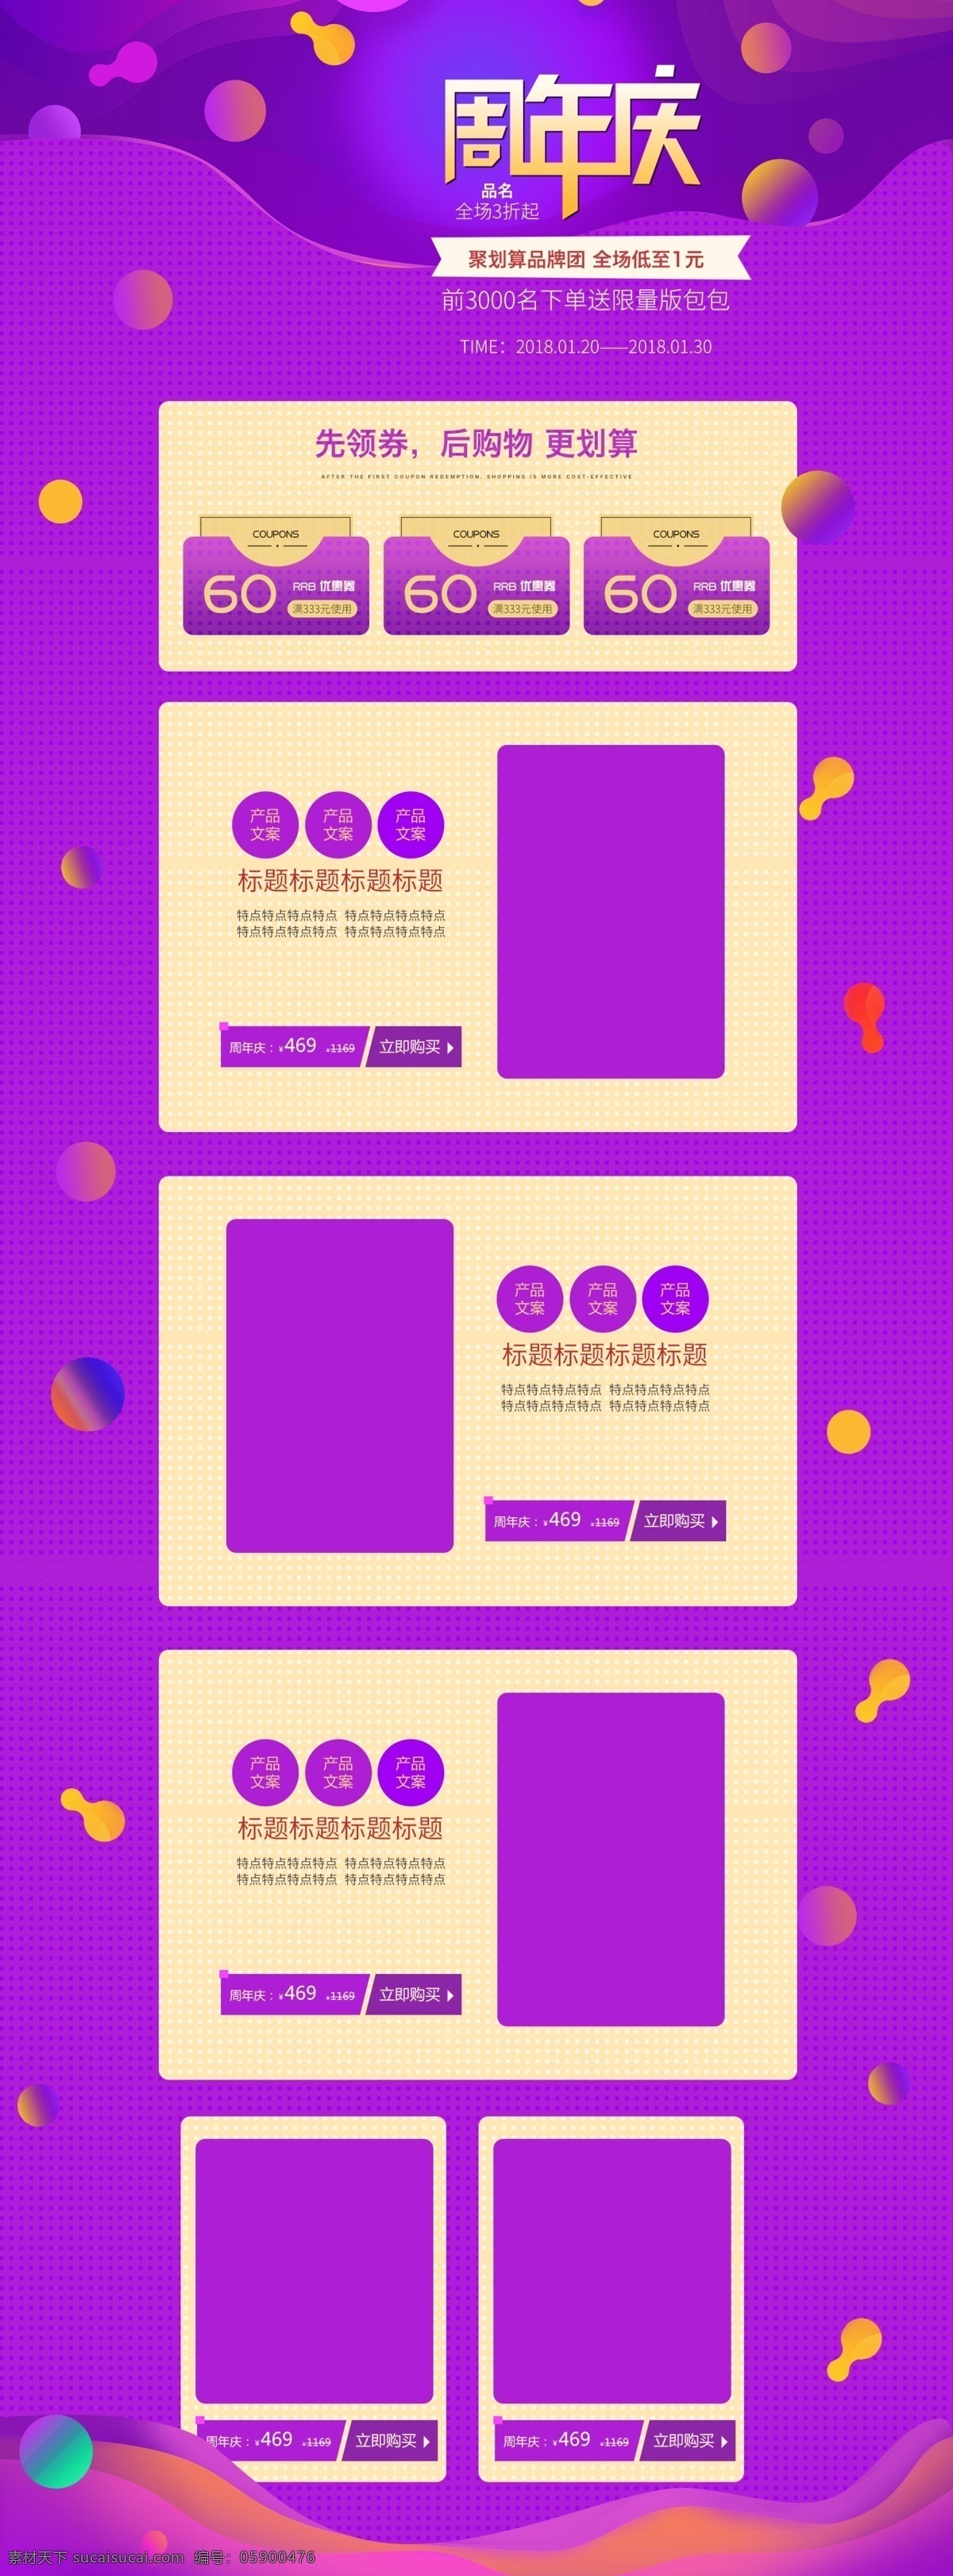 淘宝 天猫 周年庆 促销 氛围 首页 模板 产品排版 促销氛围 电商通用 首页设计 首页设计模板 淘宝天猫 优惠券 源文件 紫色背景